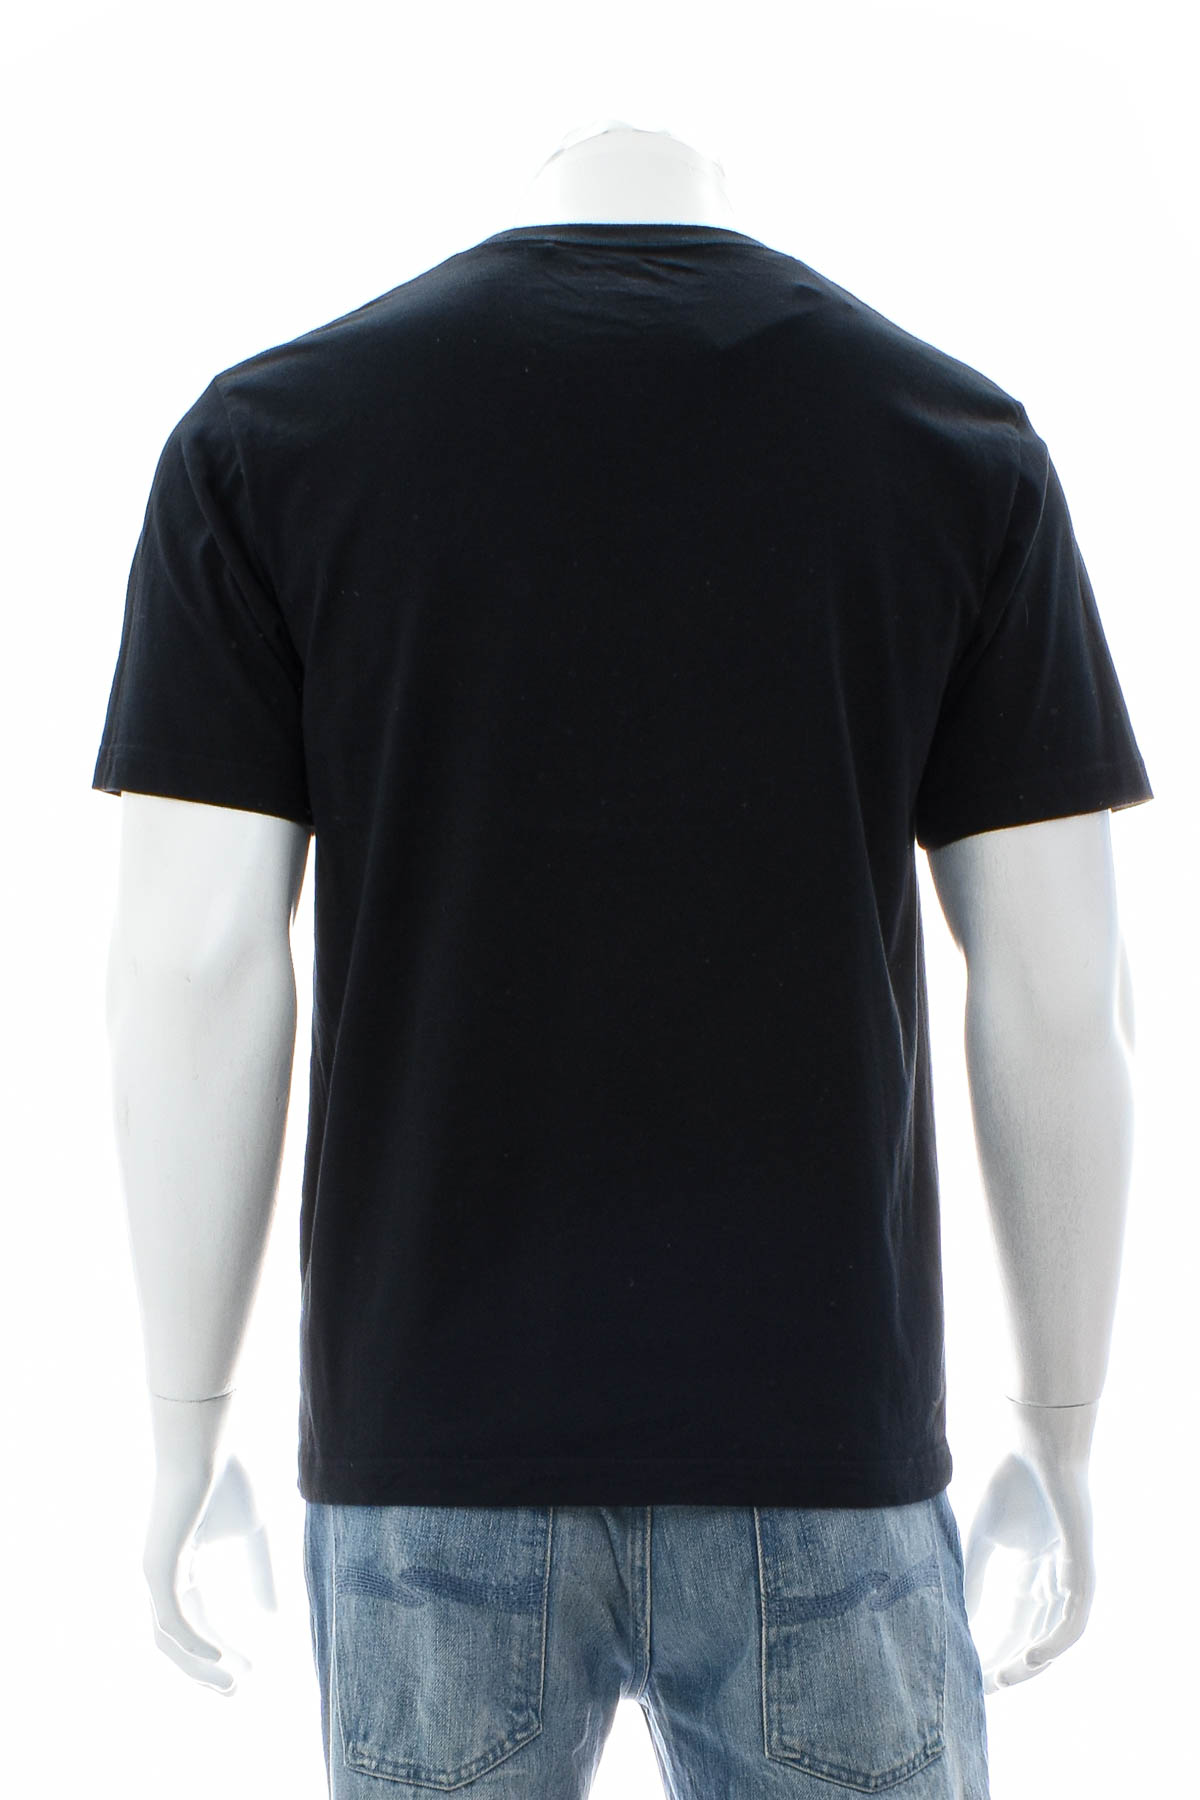 Ανδρικό μπλουζάκι - UNIQLO - 1